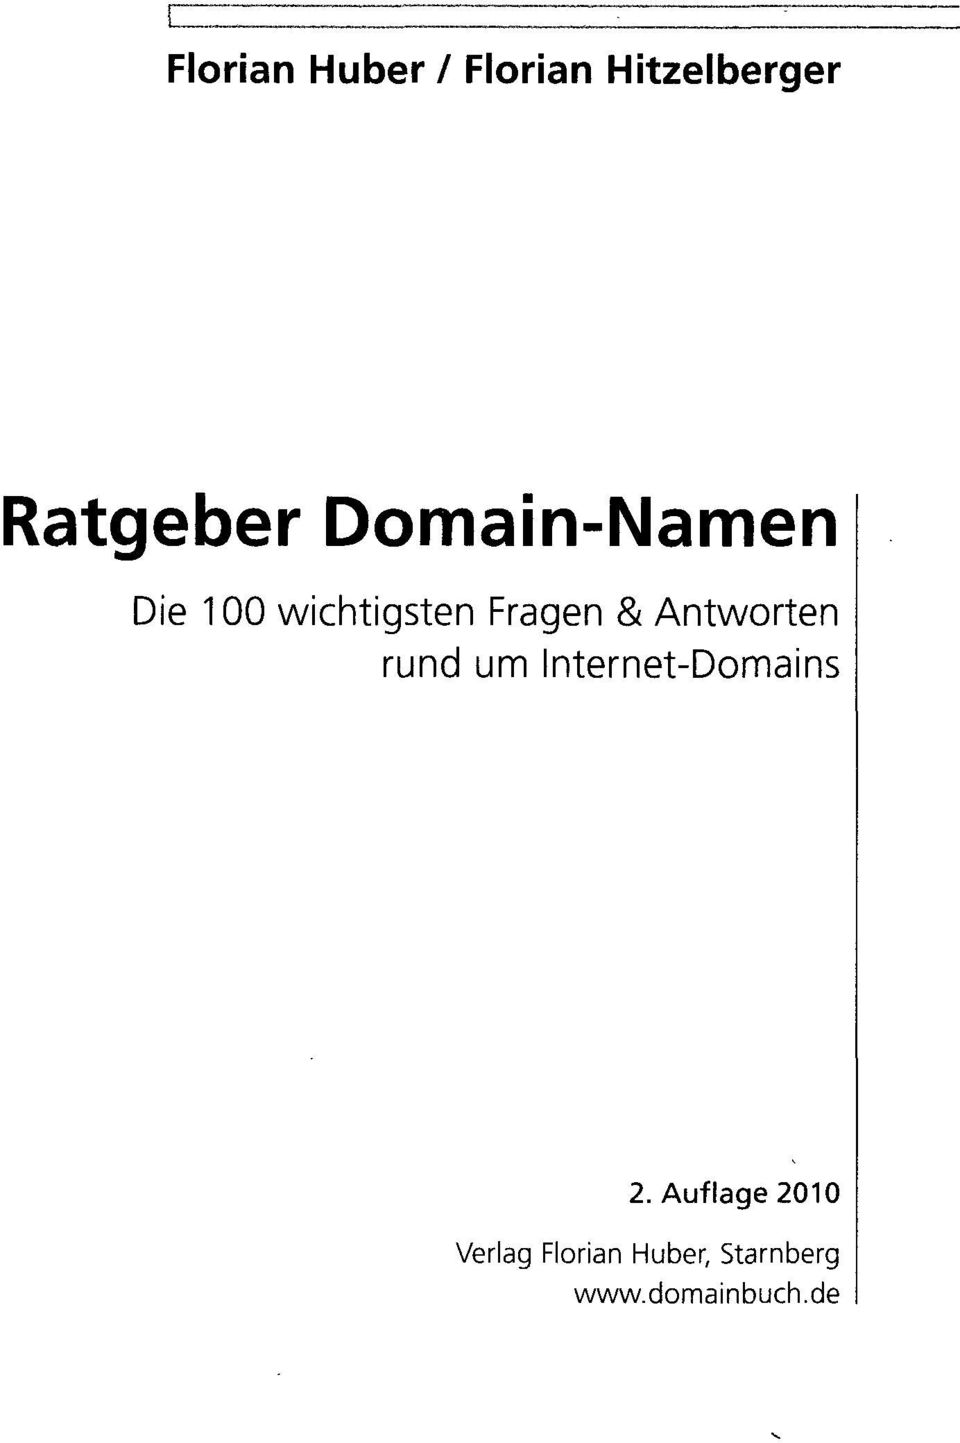 Antworten rund um Internet-Domains 2.